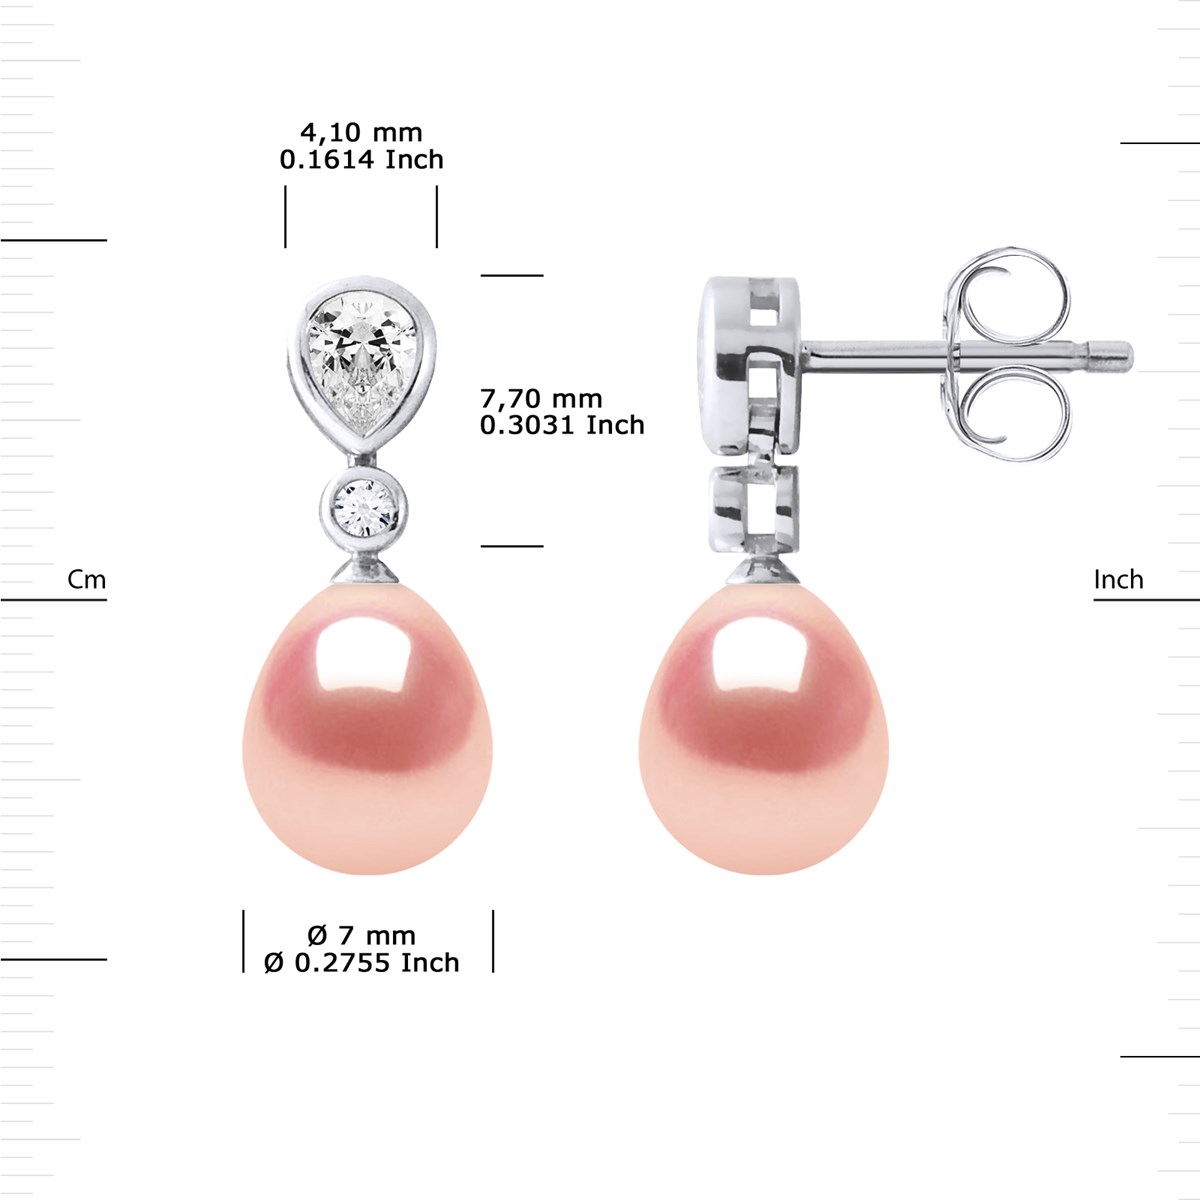 Pendants d'Oreilles Joaillerie Perles d'Eau Douce Poires 7-8 mm Roses Argent 925 - vue 3